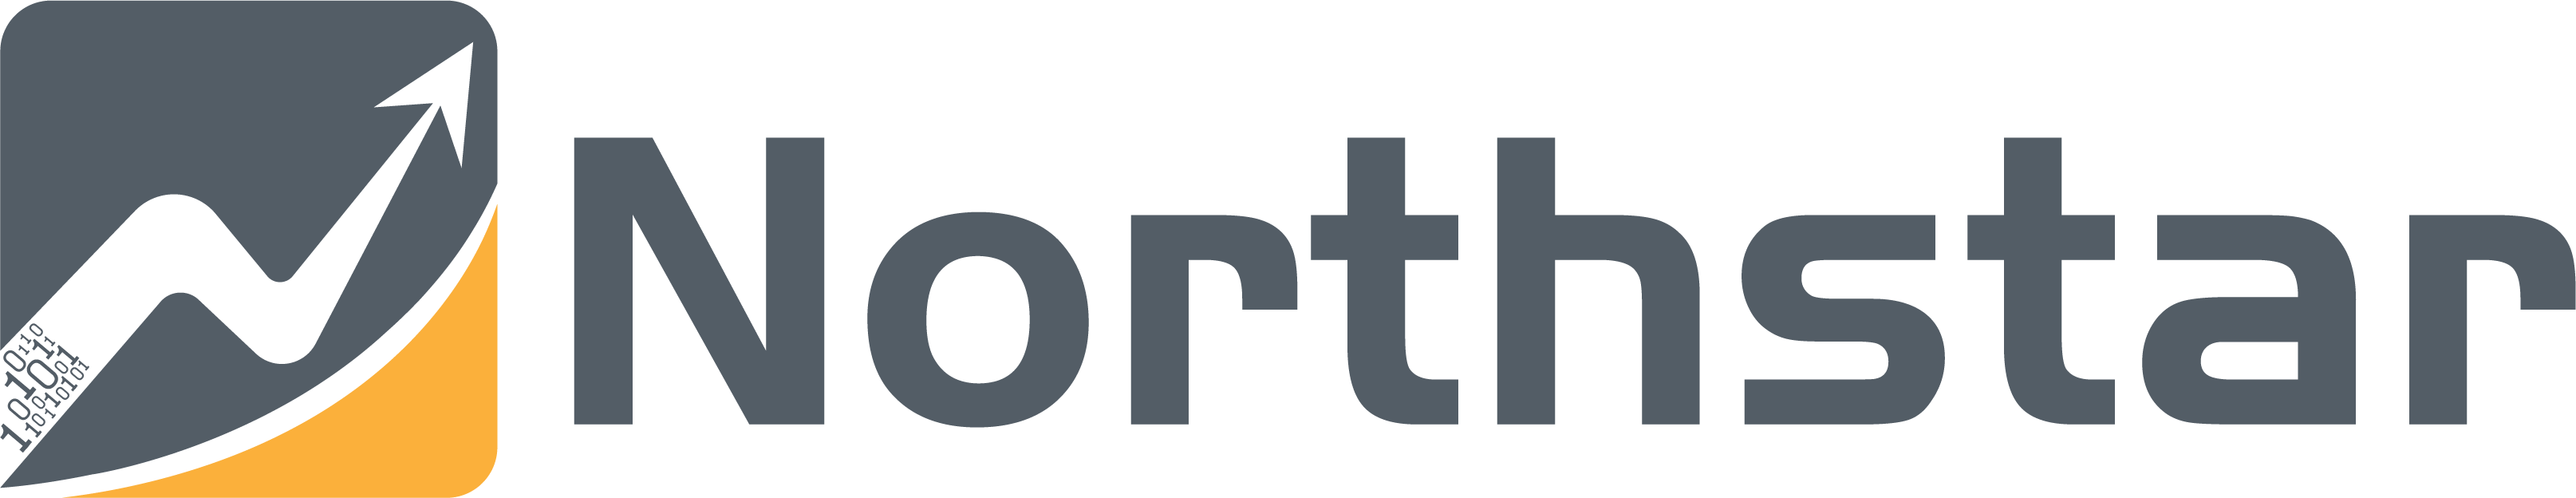 Northstar盈富量化交易平台